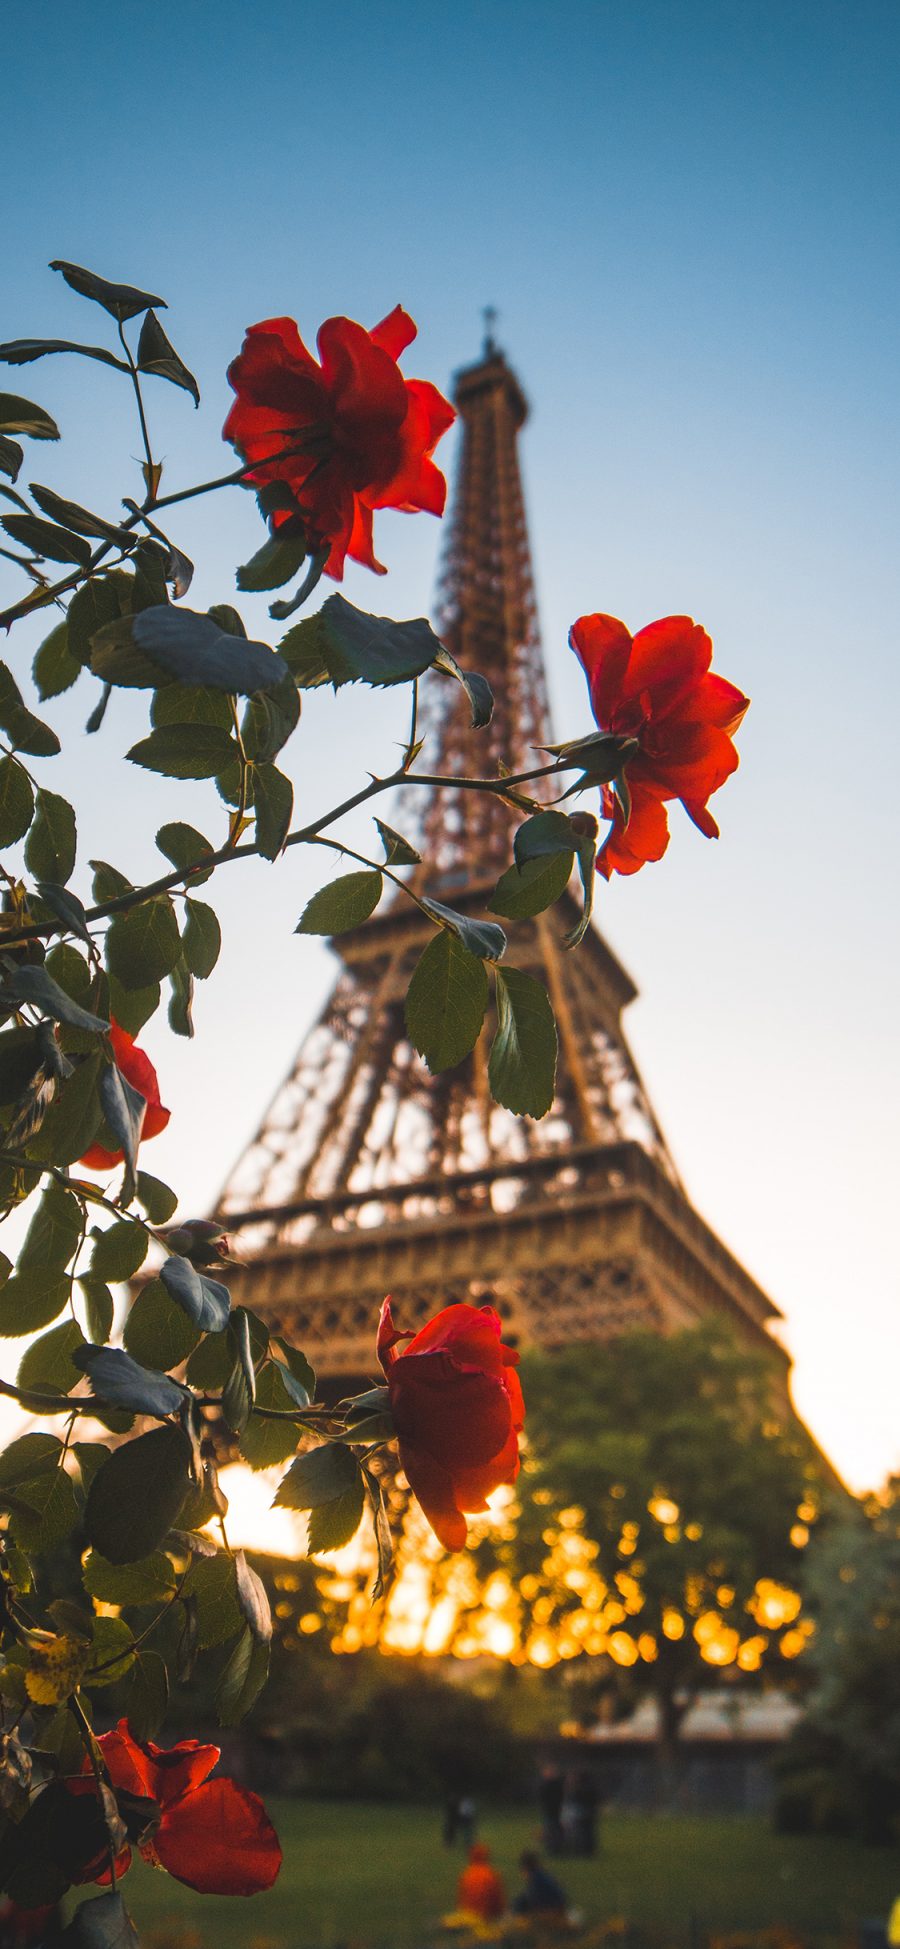 [2436×1125]背景 巴黎铁塔 鲜花 红玫瑰 苹果手机壁纸图片